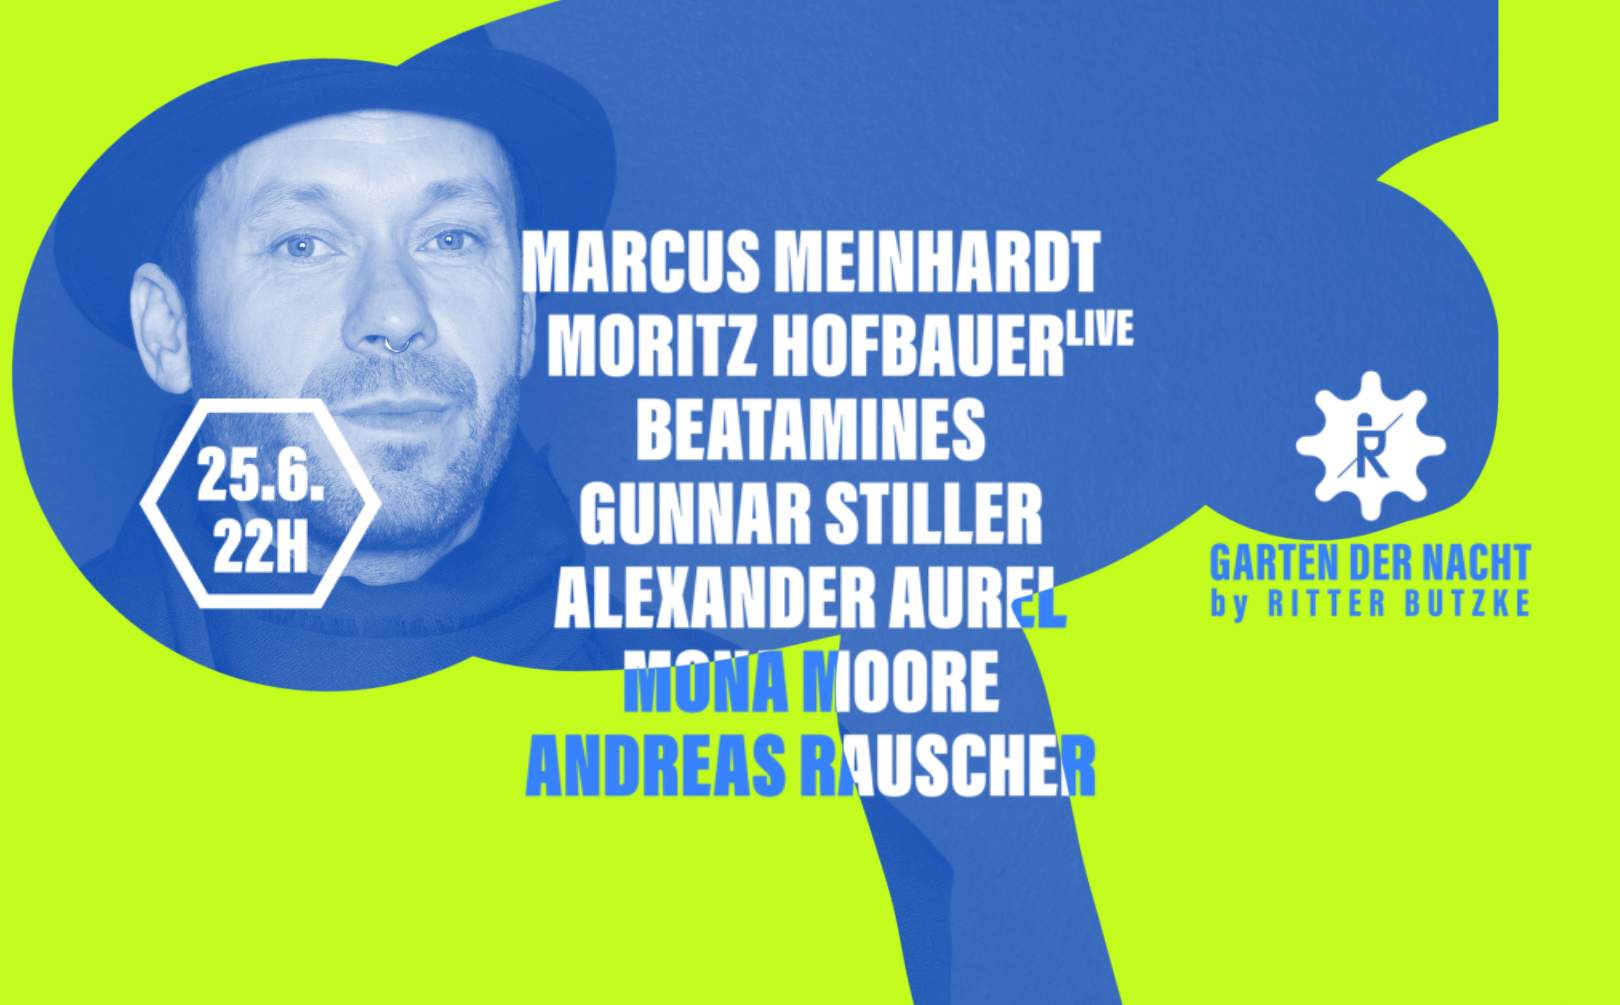 Marcus Meinhardt & Moritz Hofbauer (live) at Garten der Nacht - フライヤー表